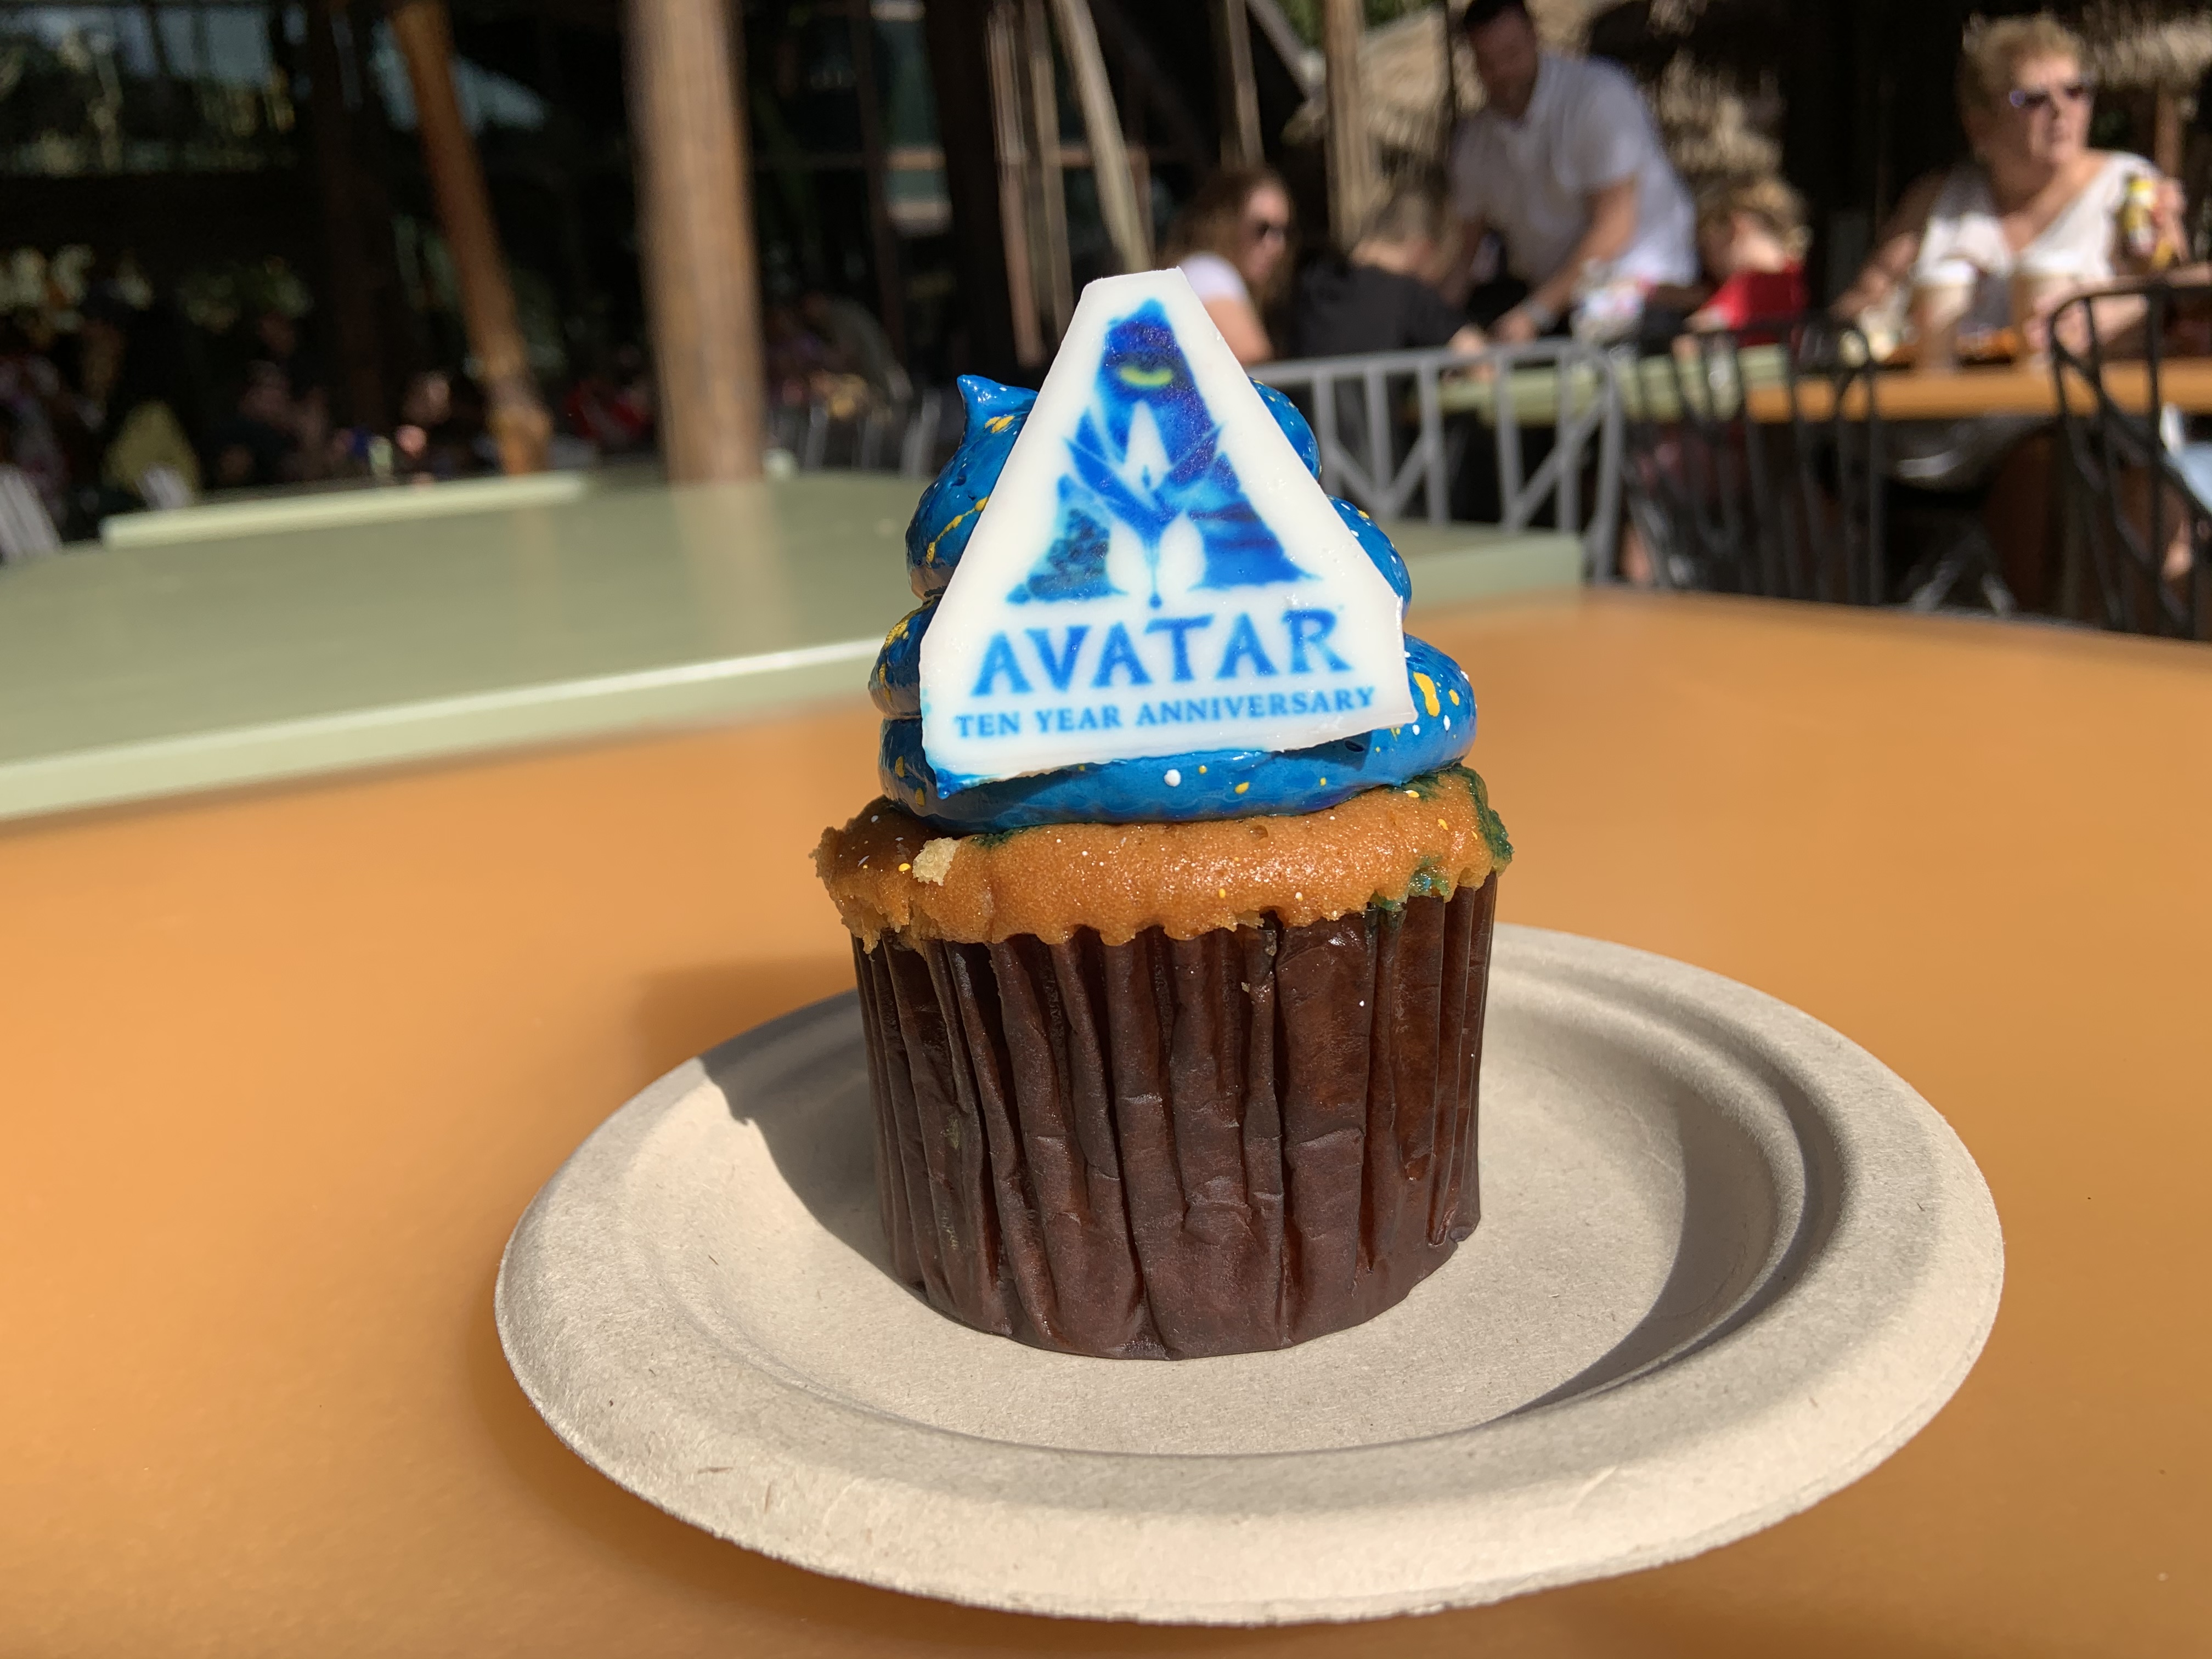 Avatar Anniversary Cupcake 12/17/19 9